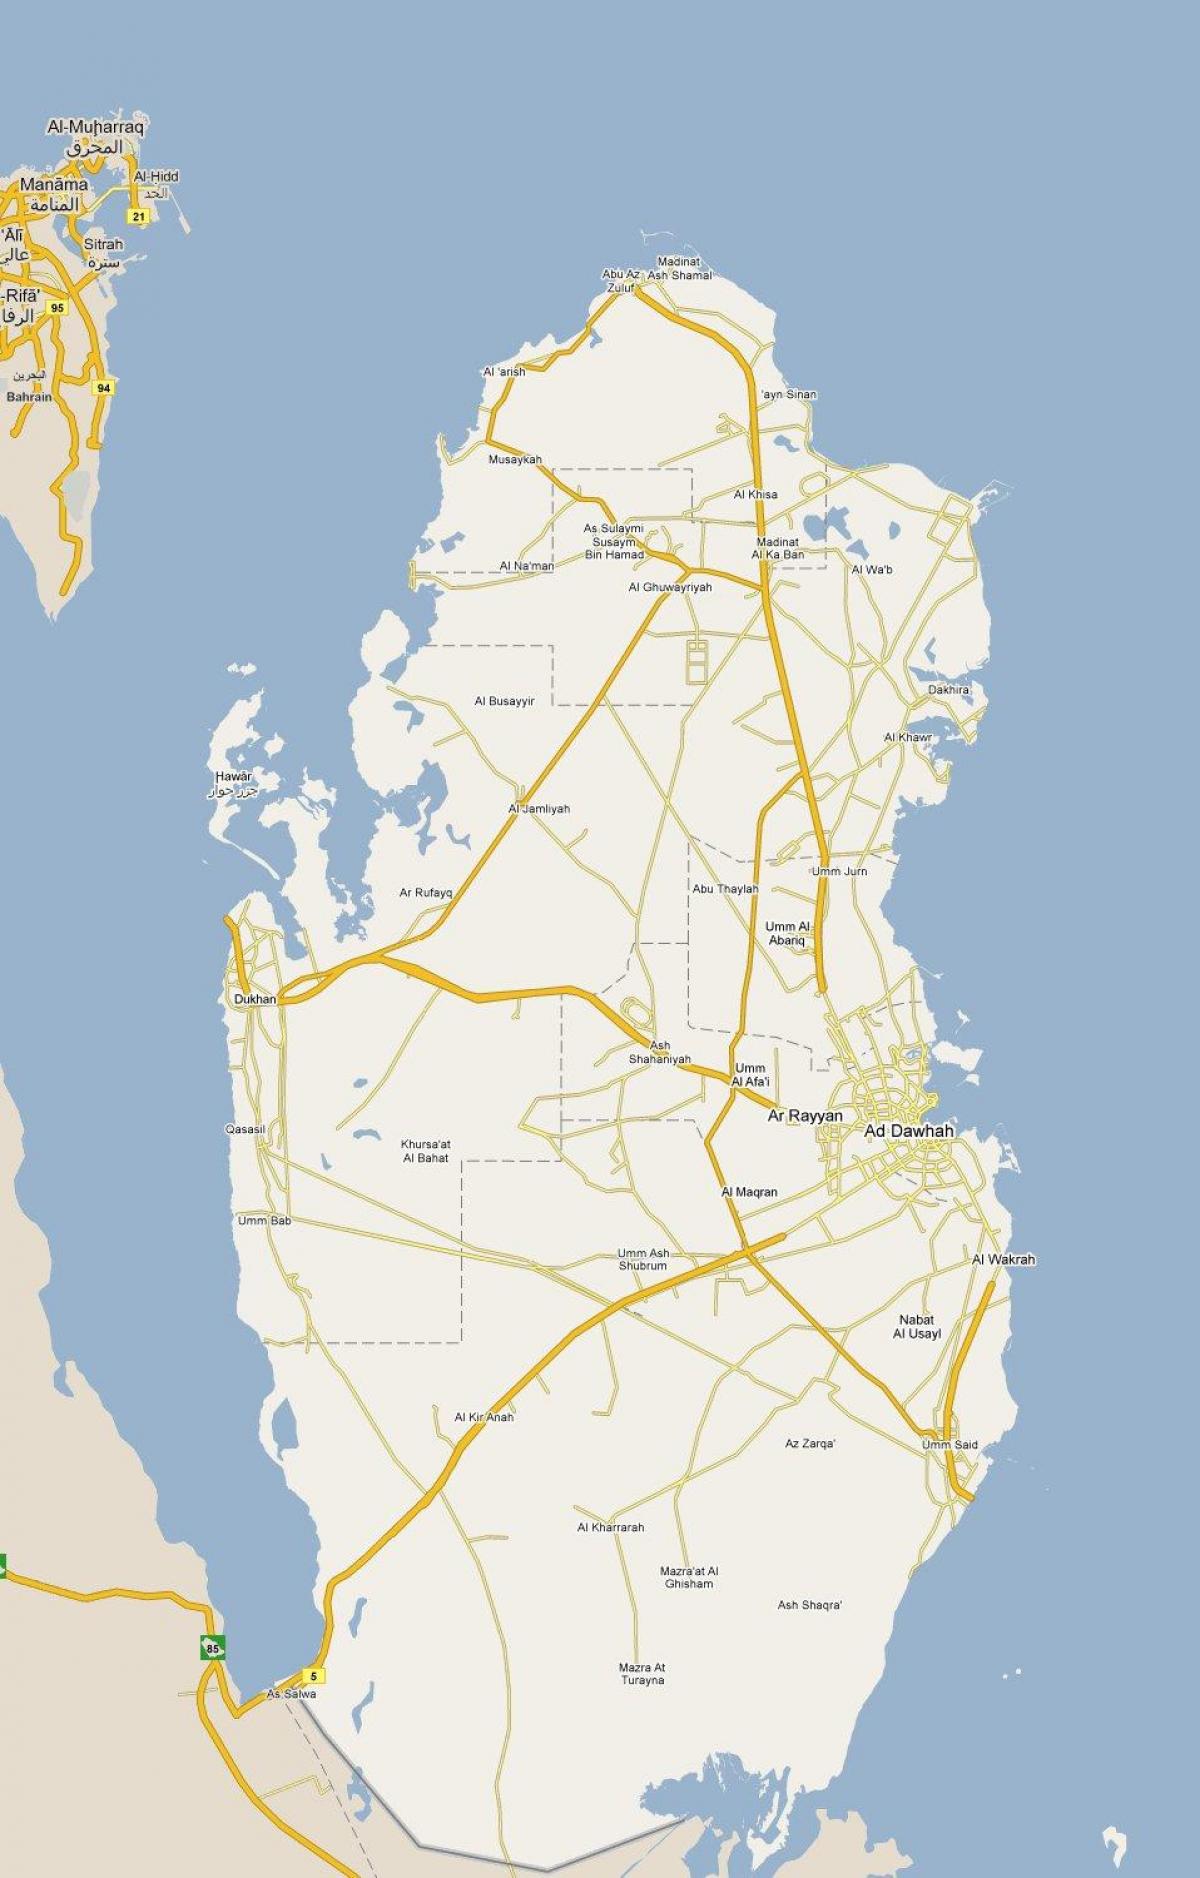 la mappa mostra il qatar